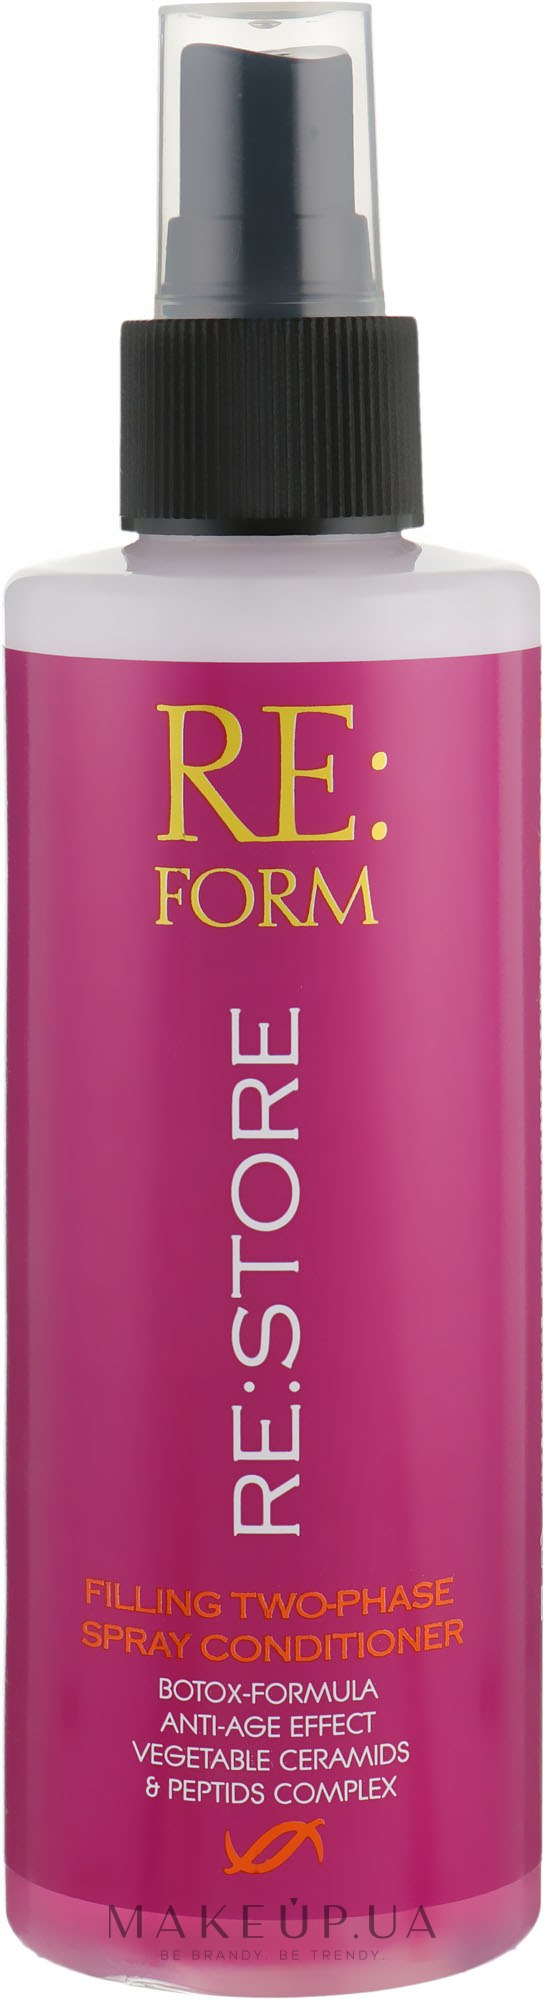 Двухфазный спрей-кондиционер для восстановления волос - Re:form Re:store Filling Two-Phase Spray Conditioner — фото 200ml